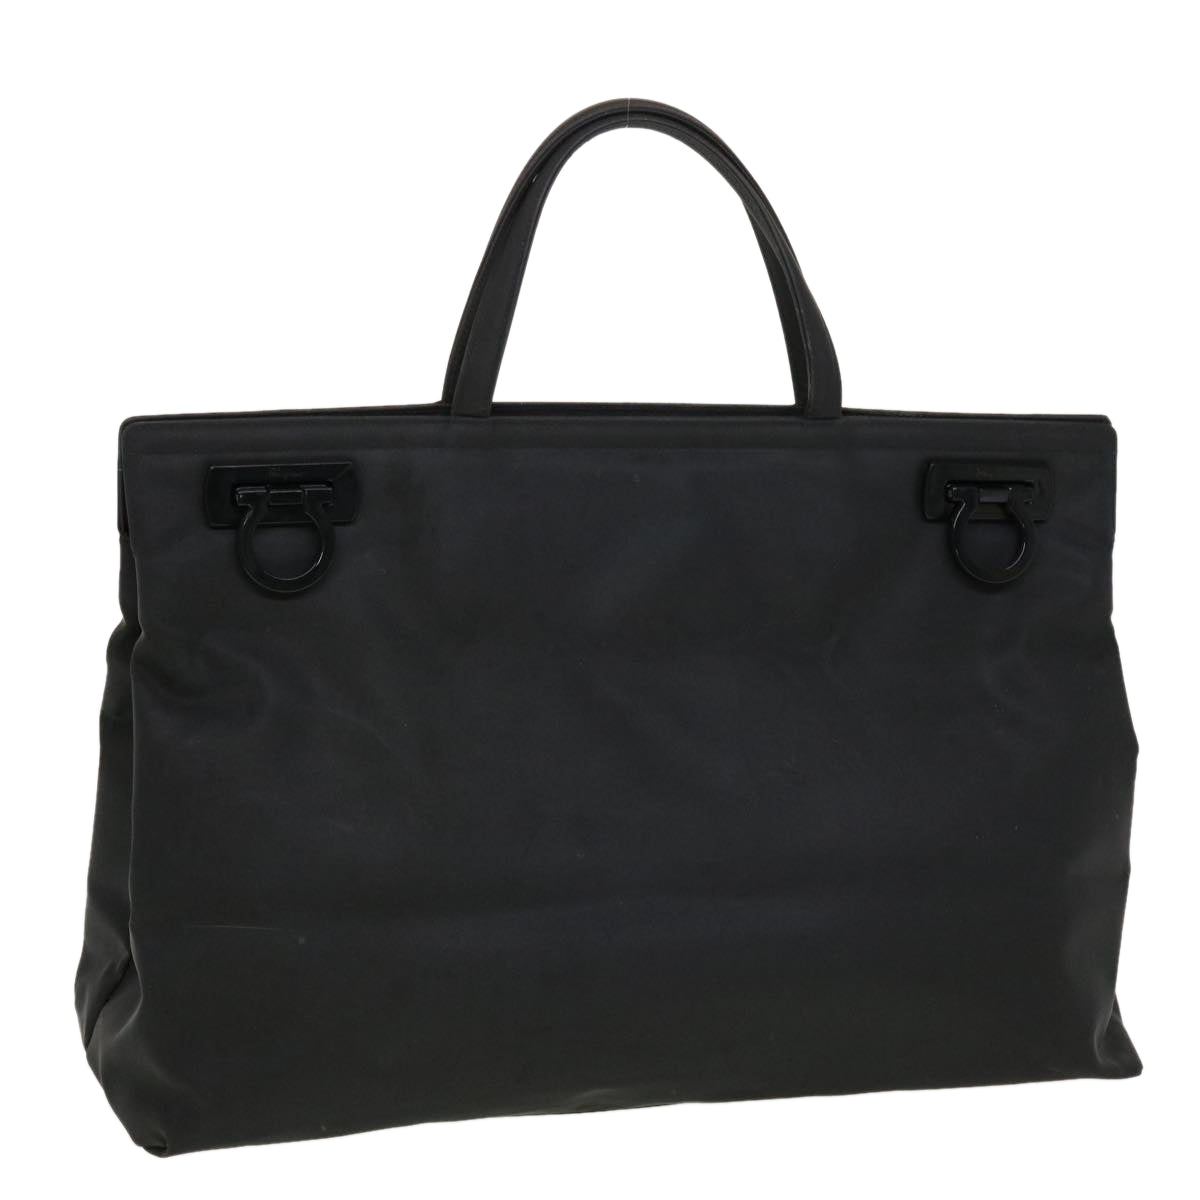 Salvatore Ferragamo Hand Bag Nylon Black AU-21 8865 Auth cl524